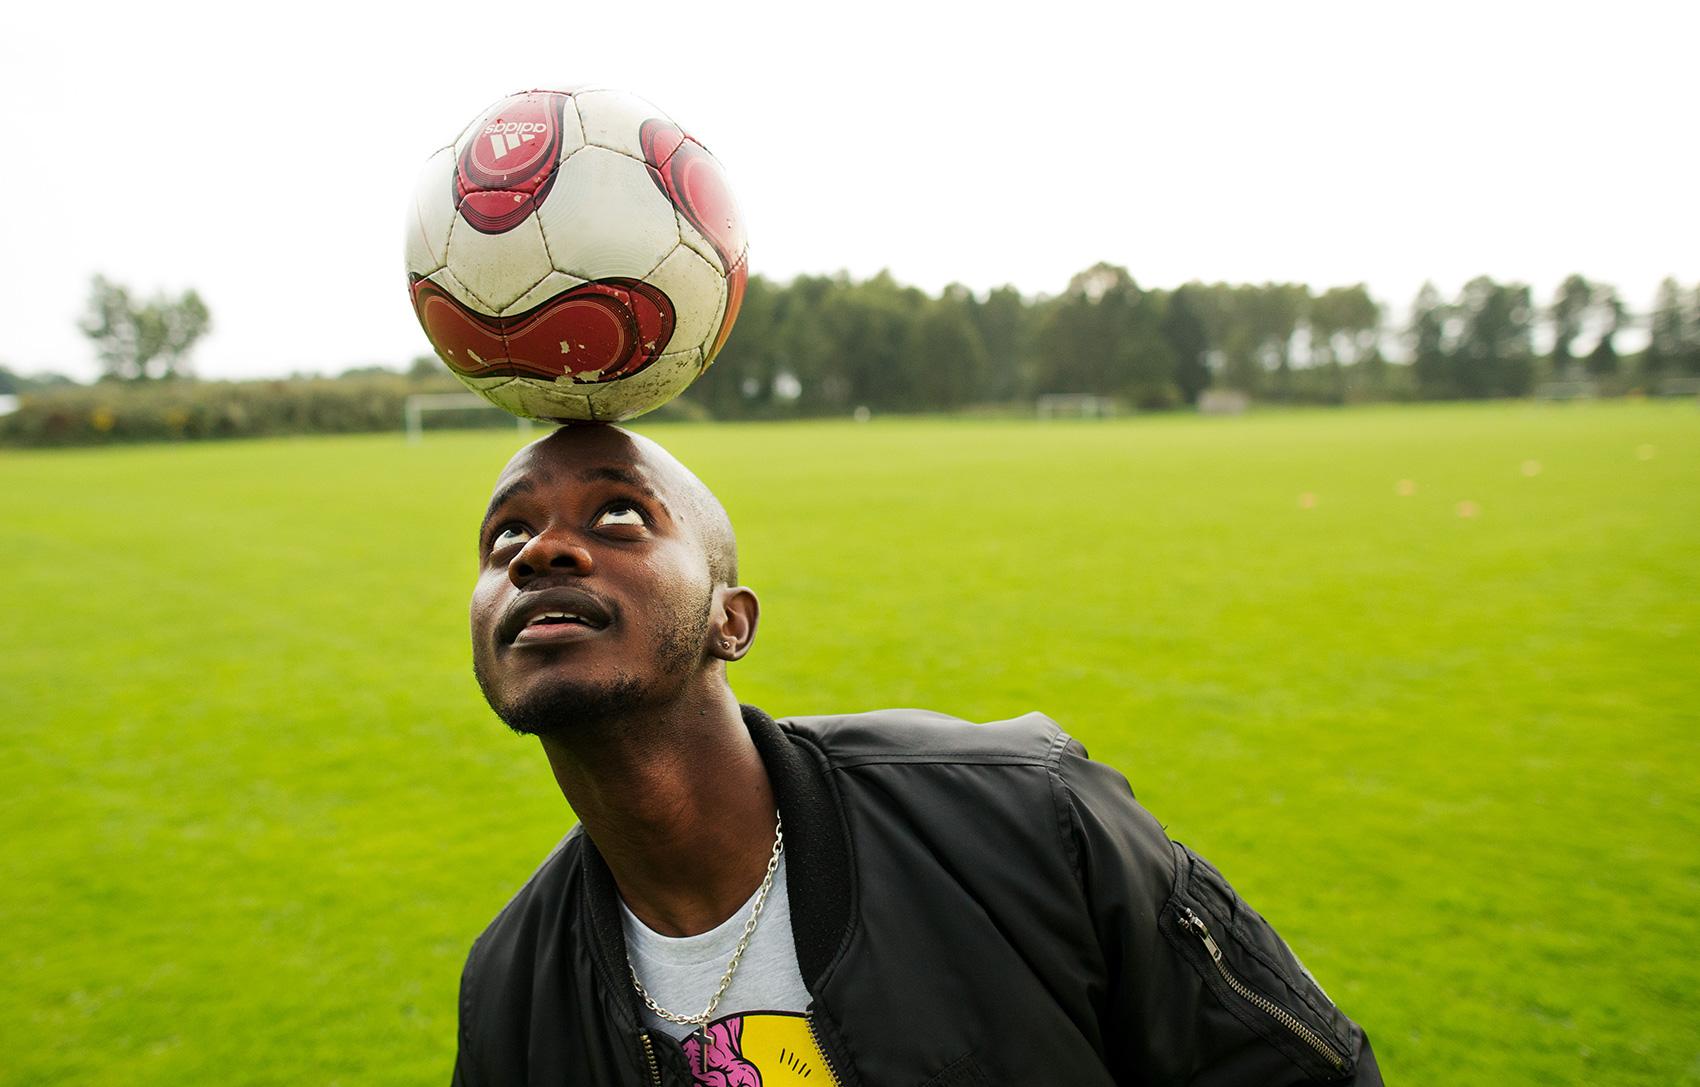 När Nelson Tusiime kom till Sibbhult som 17-åring insåg han att det inte gick att göra som i Afrika, bara gå ut på byn och tala med folk. ”Jag började spela fotboll för att komma in i samhället och det har fungerat. Fotboll är ett eget språk.”